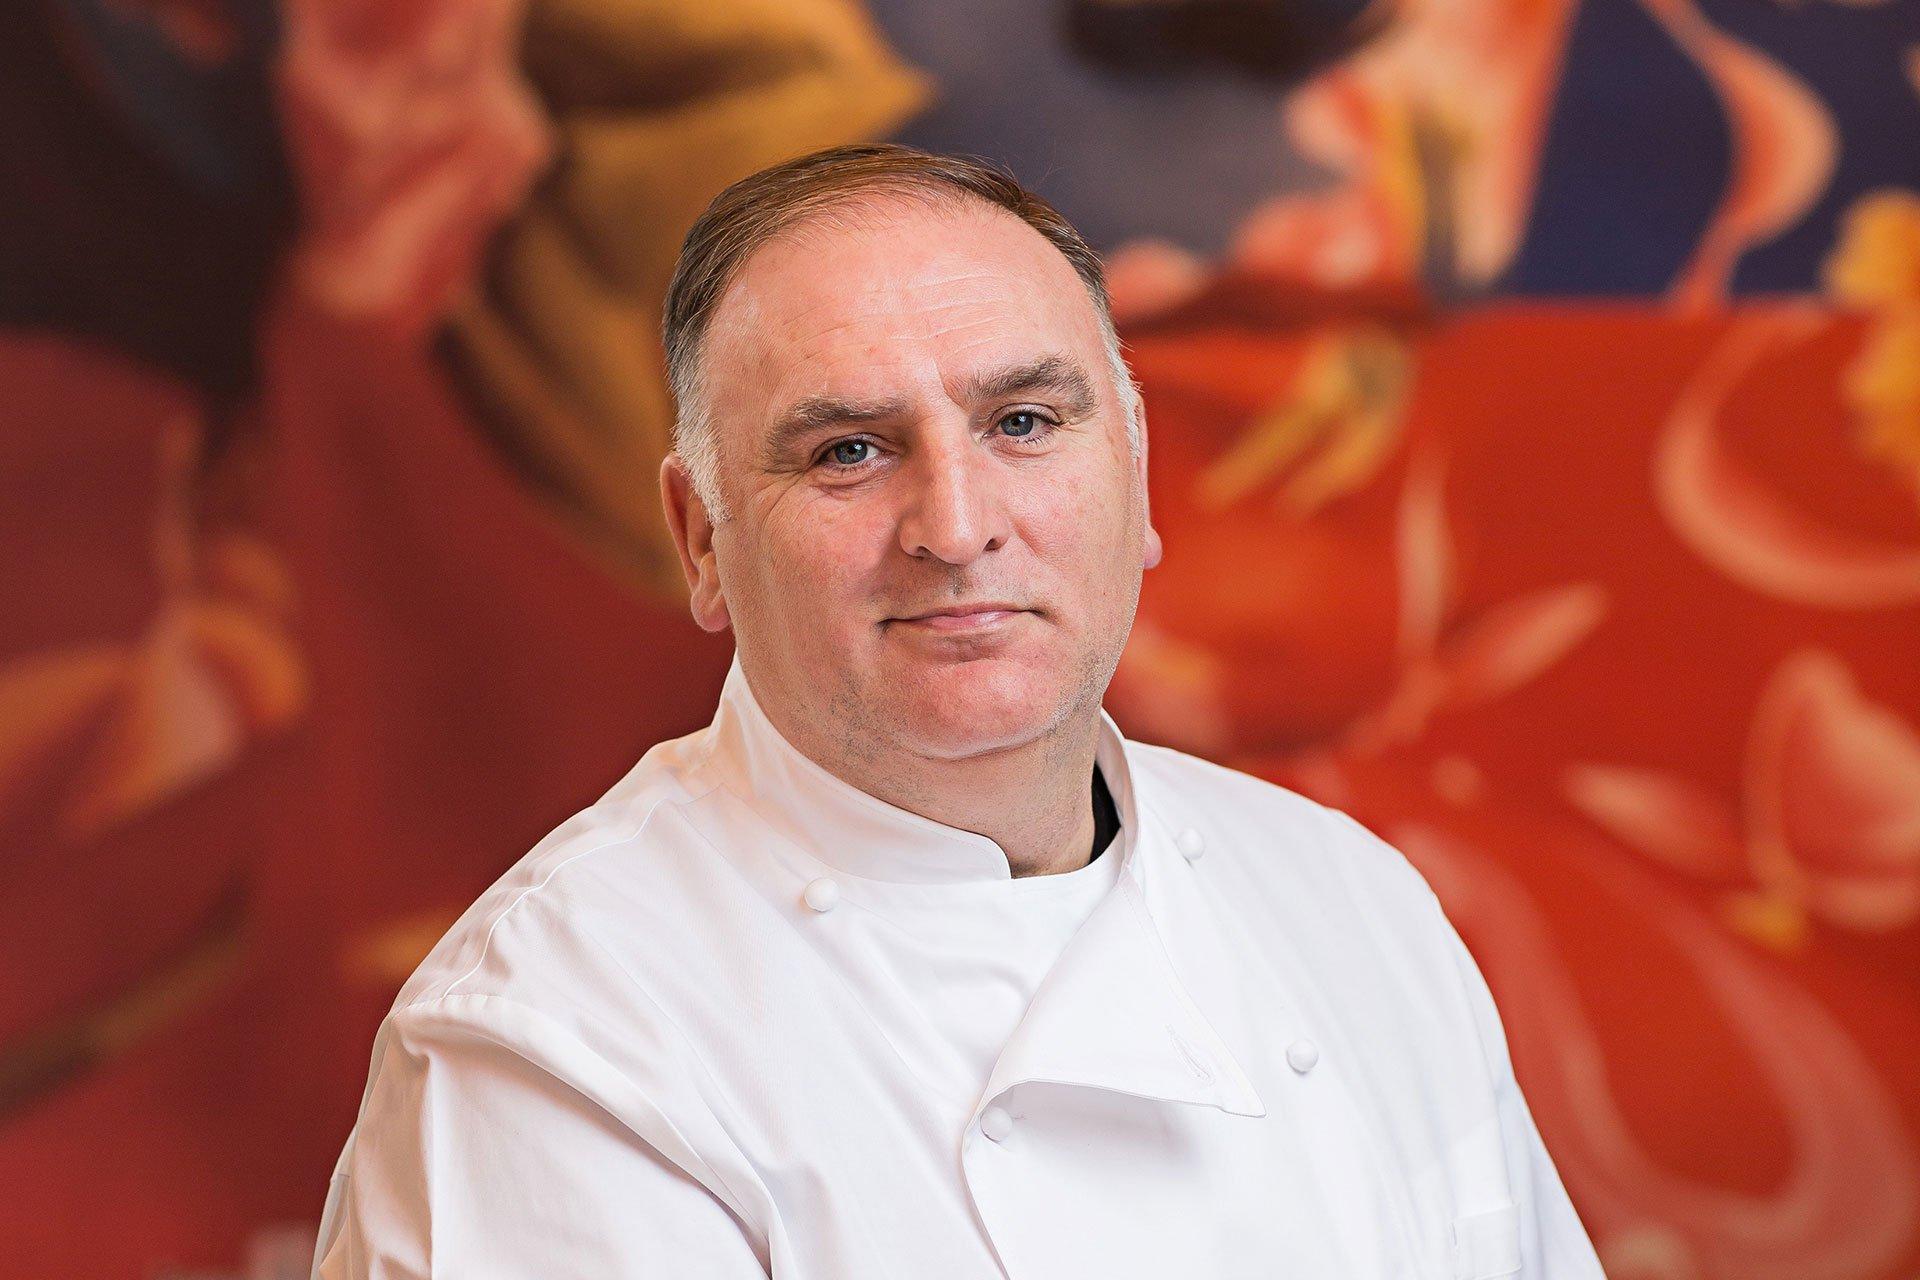 Conoce todo sobre José Andrés, el chef español que está cambiando el mundo a través de la cocina - Cover Image